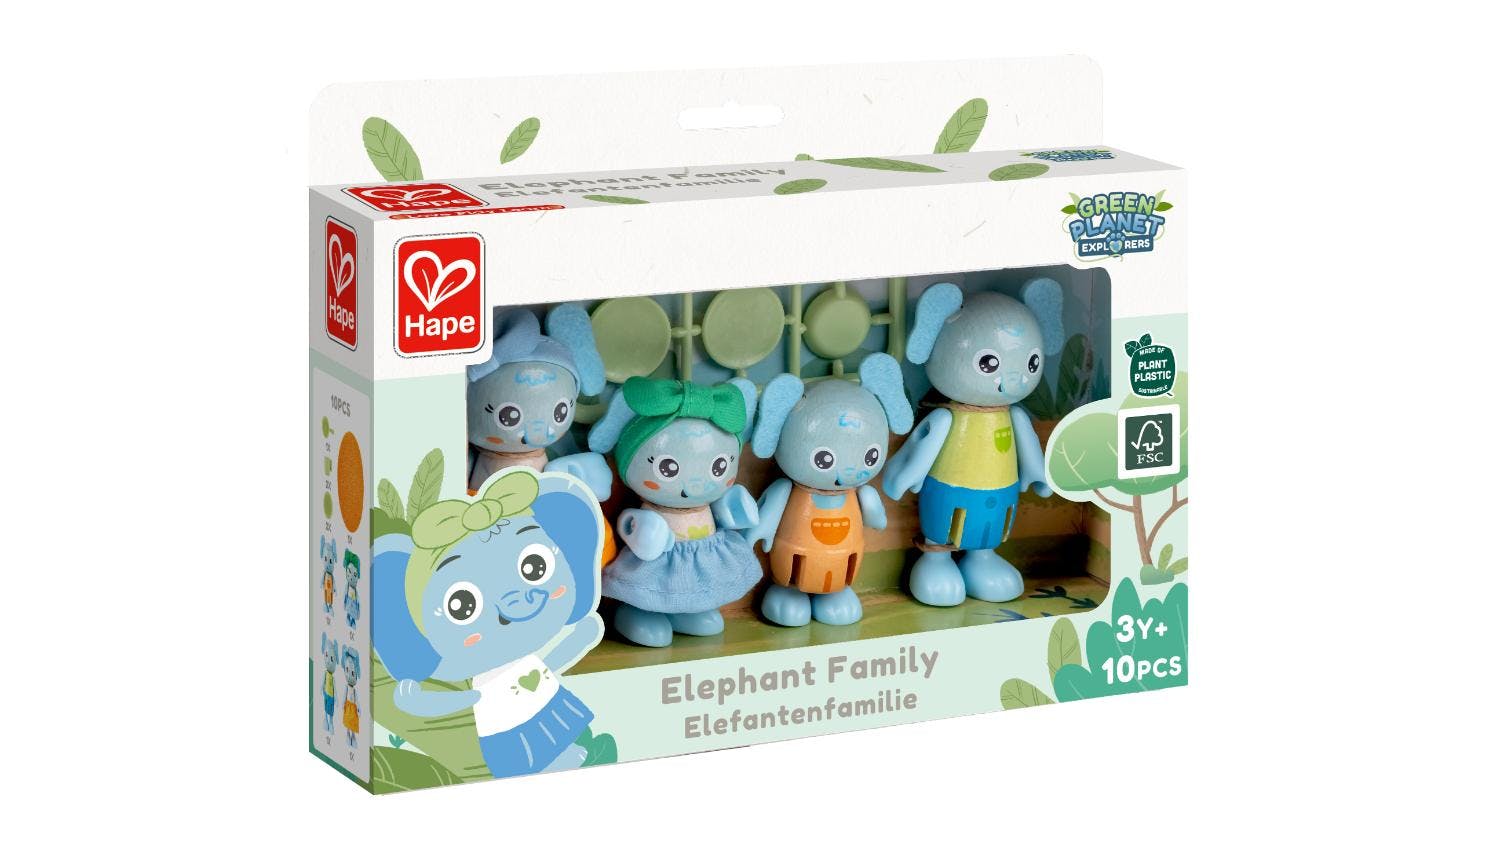 Hape "Green Planet" Figurine Set - Elephant Family